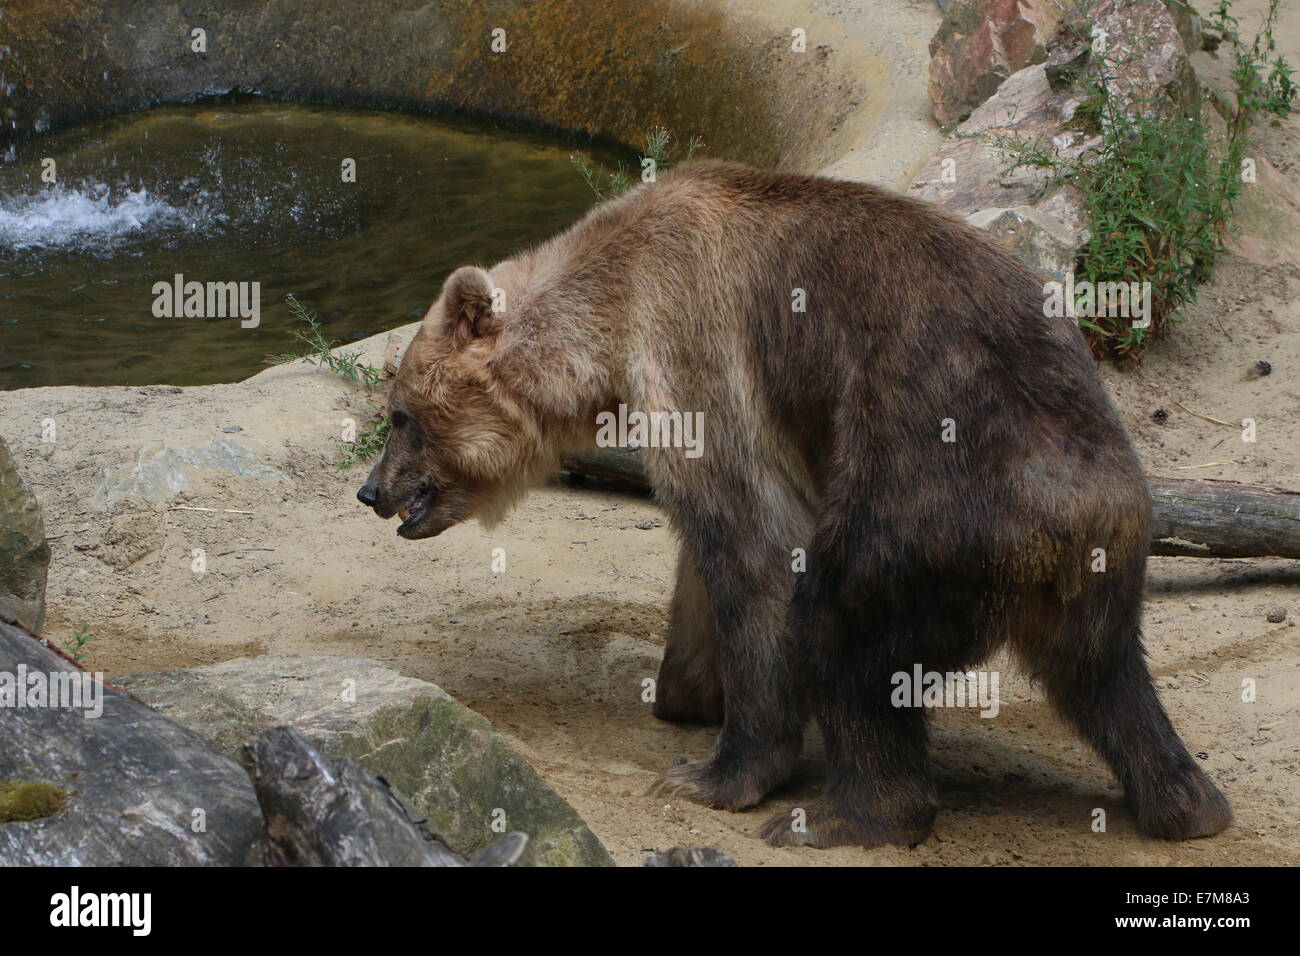 Euroasiática de oso pardo (Ursus arctos arctos) caminando en un entorno natural Foto de stock